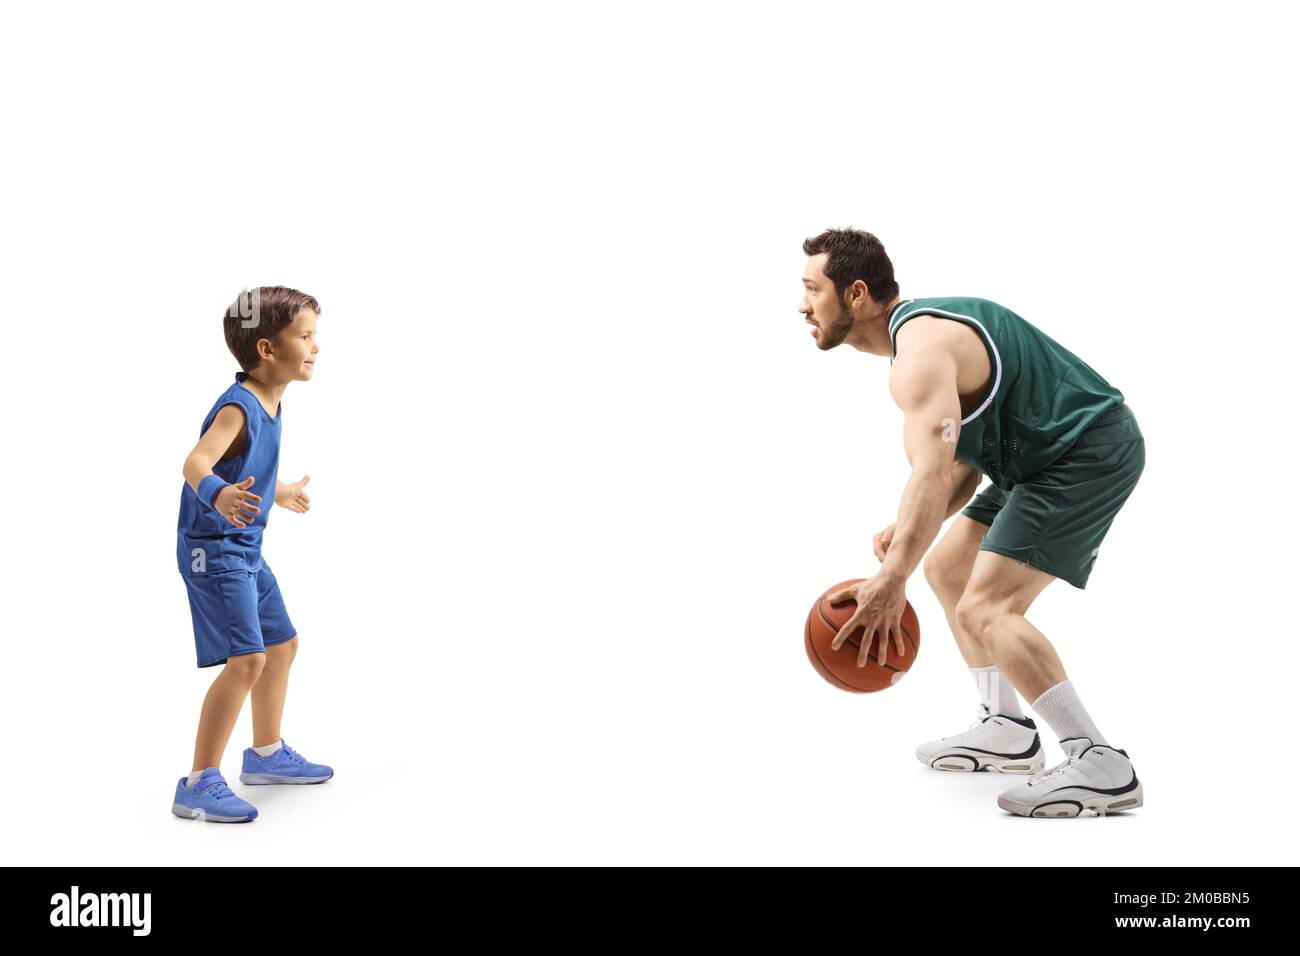 Prise de vue en profil d'un adulte jouant au basket-ball avec un petit garçon isolé sur fond blanc Banque D'Images